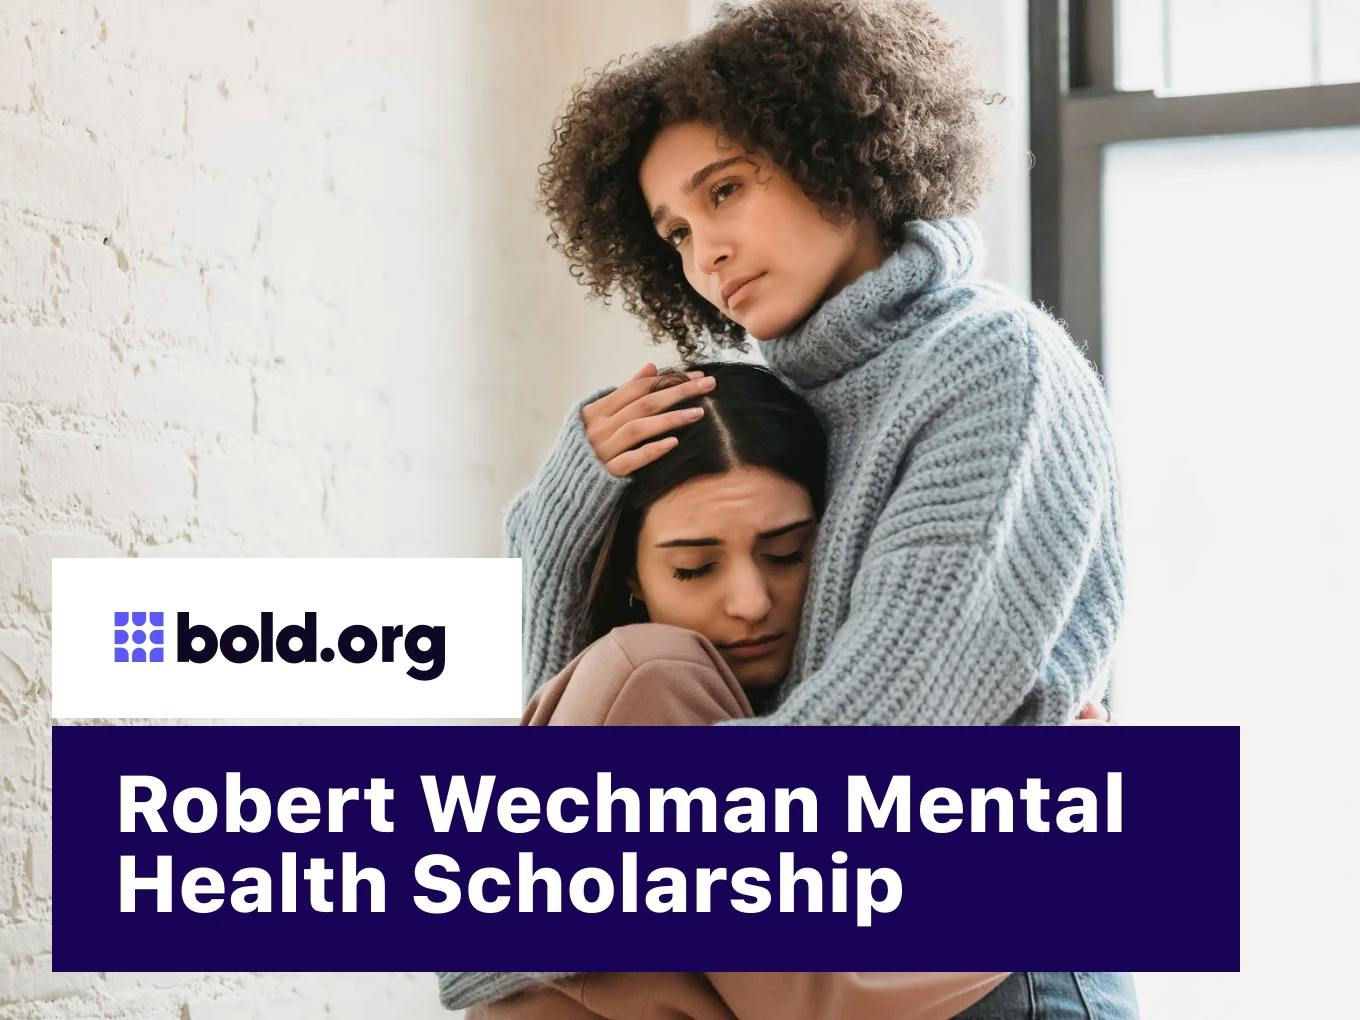 Robert Wechman Mental Health Scholarship